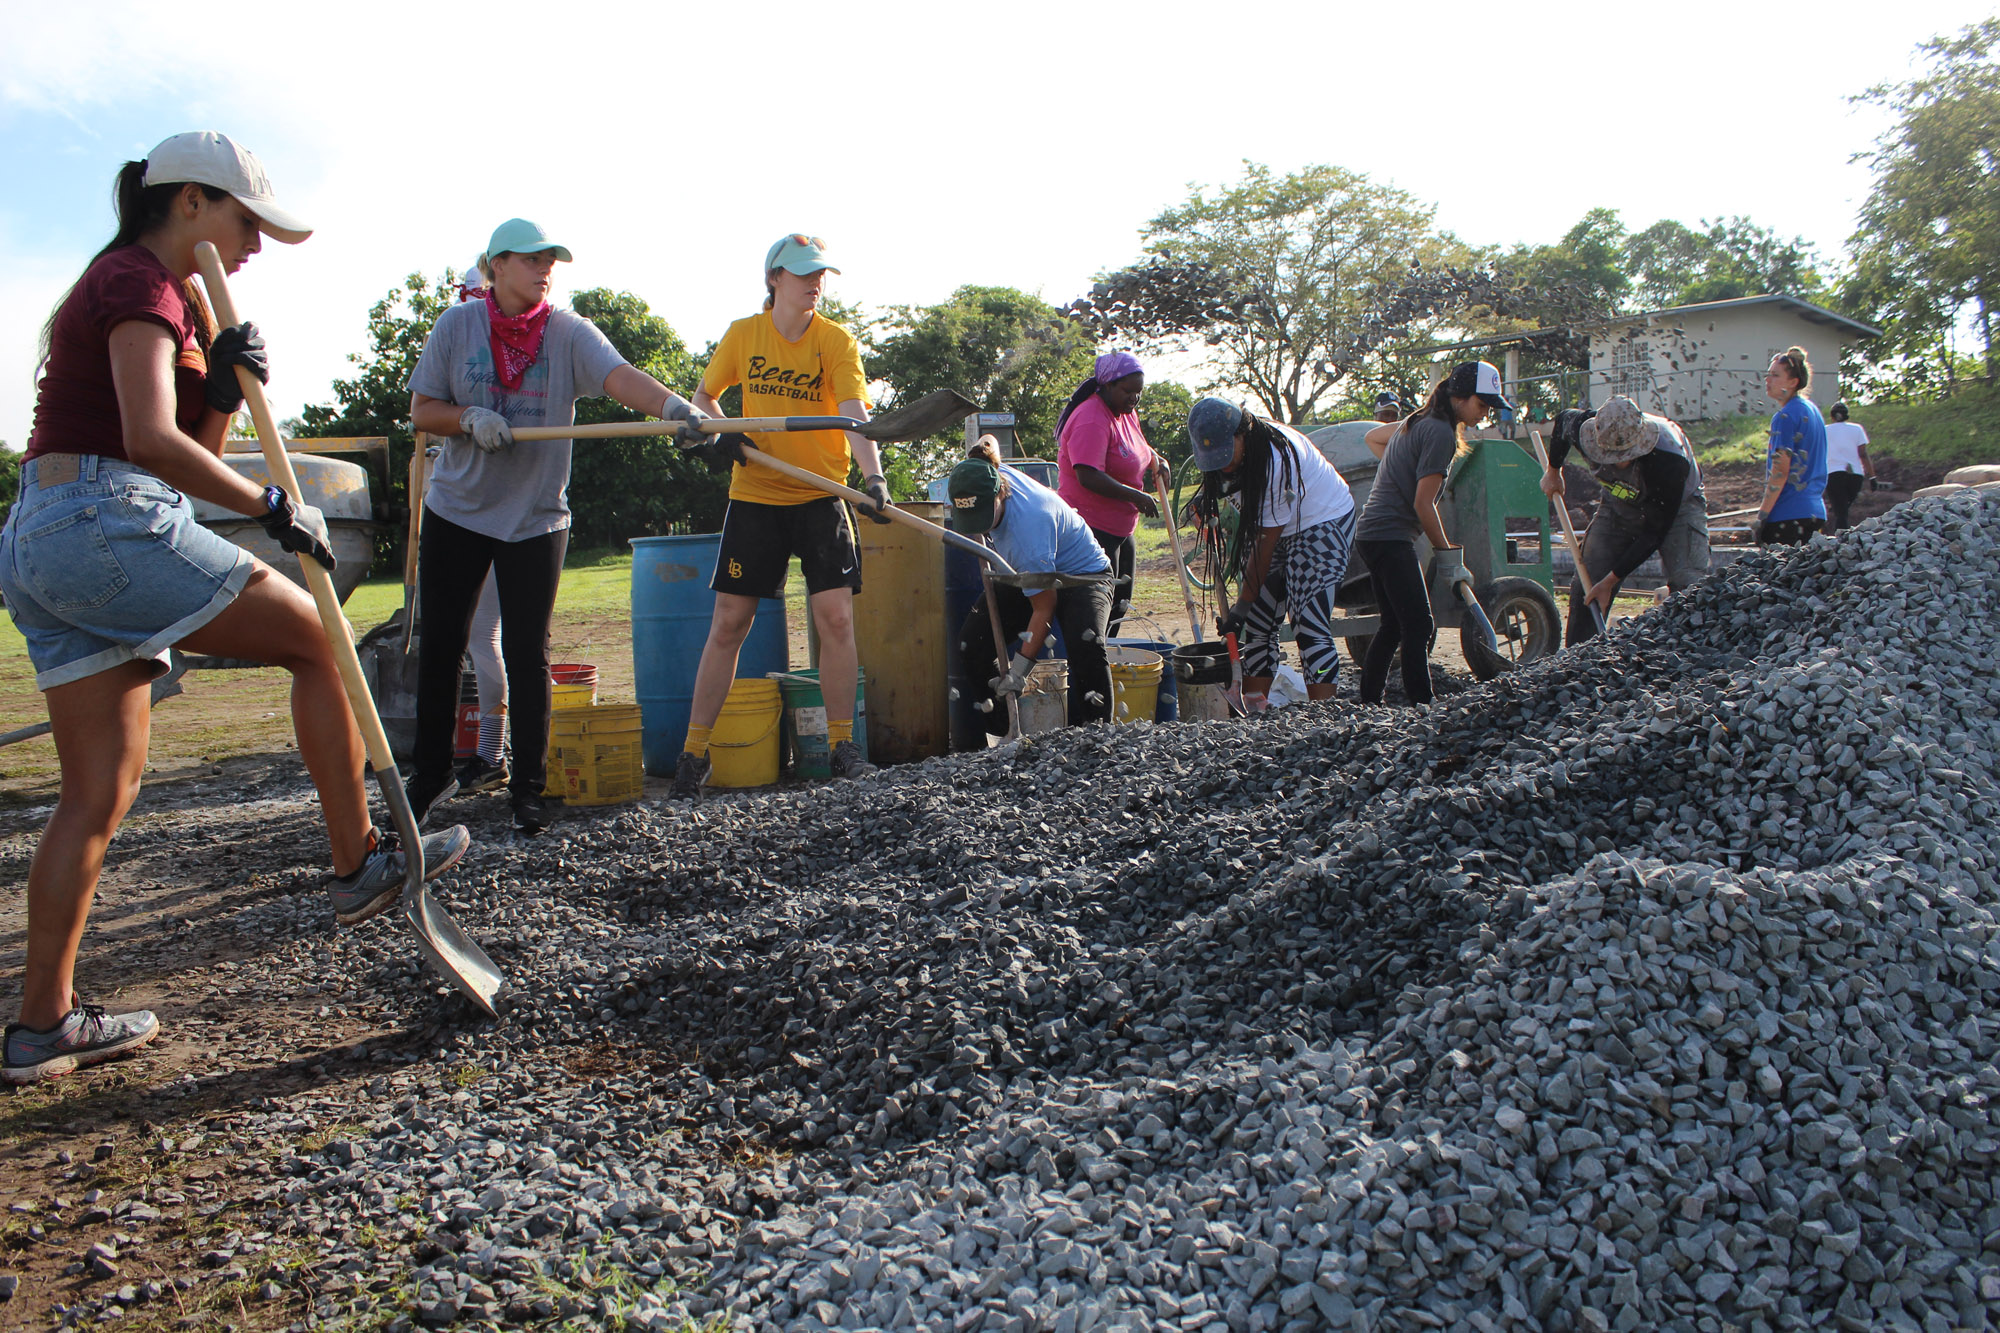 Group shoveling gravel